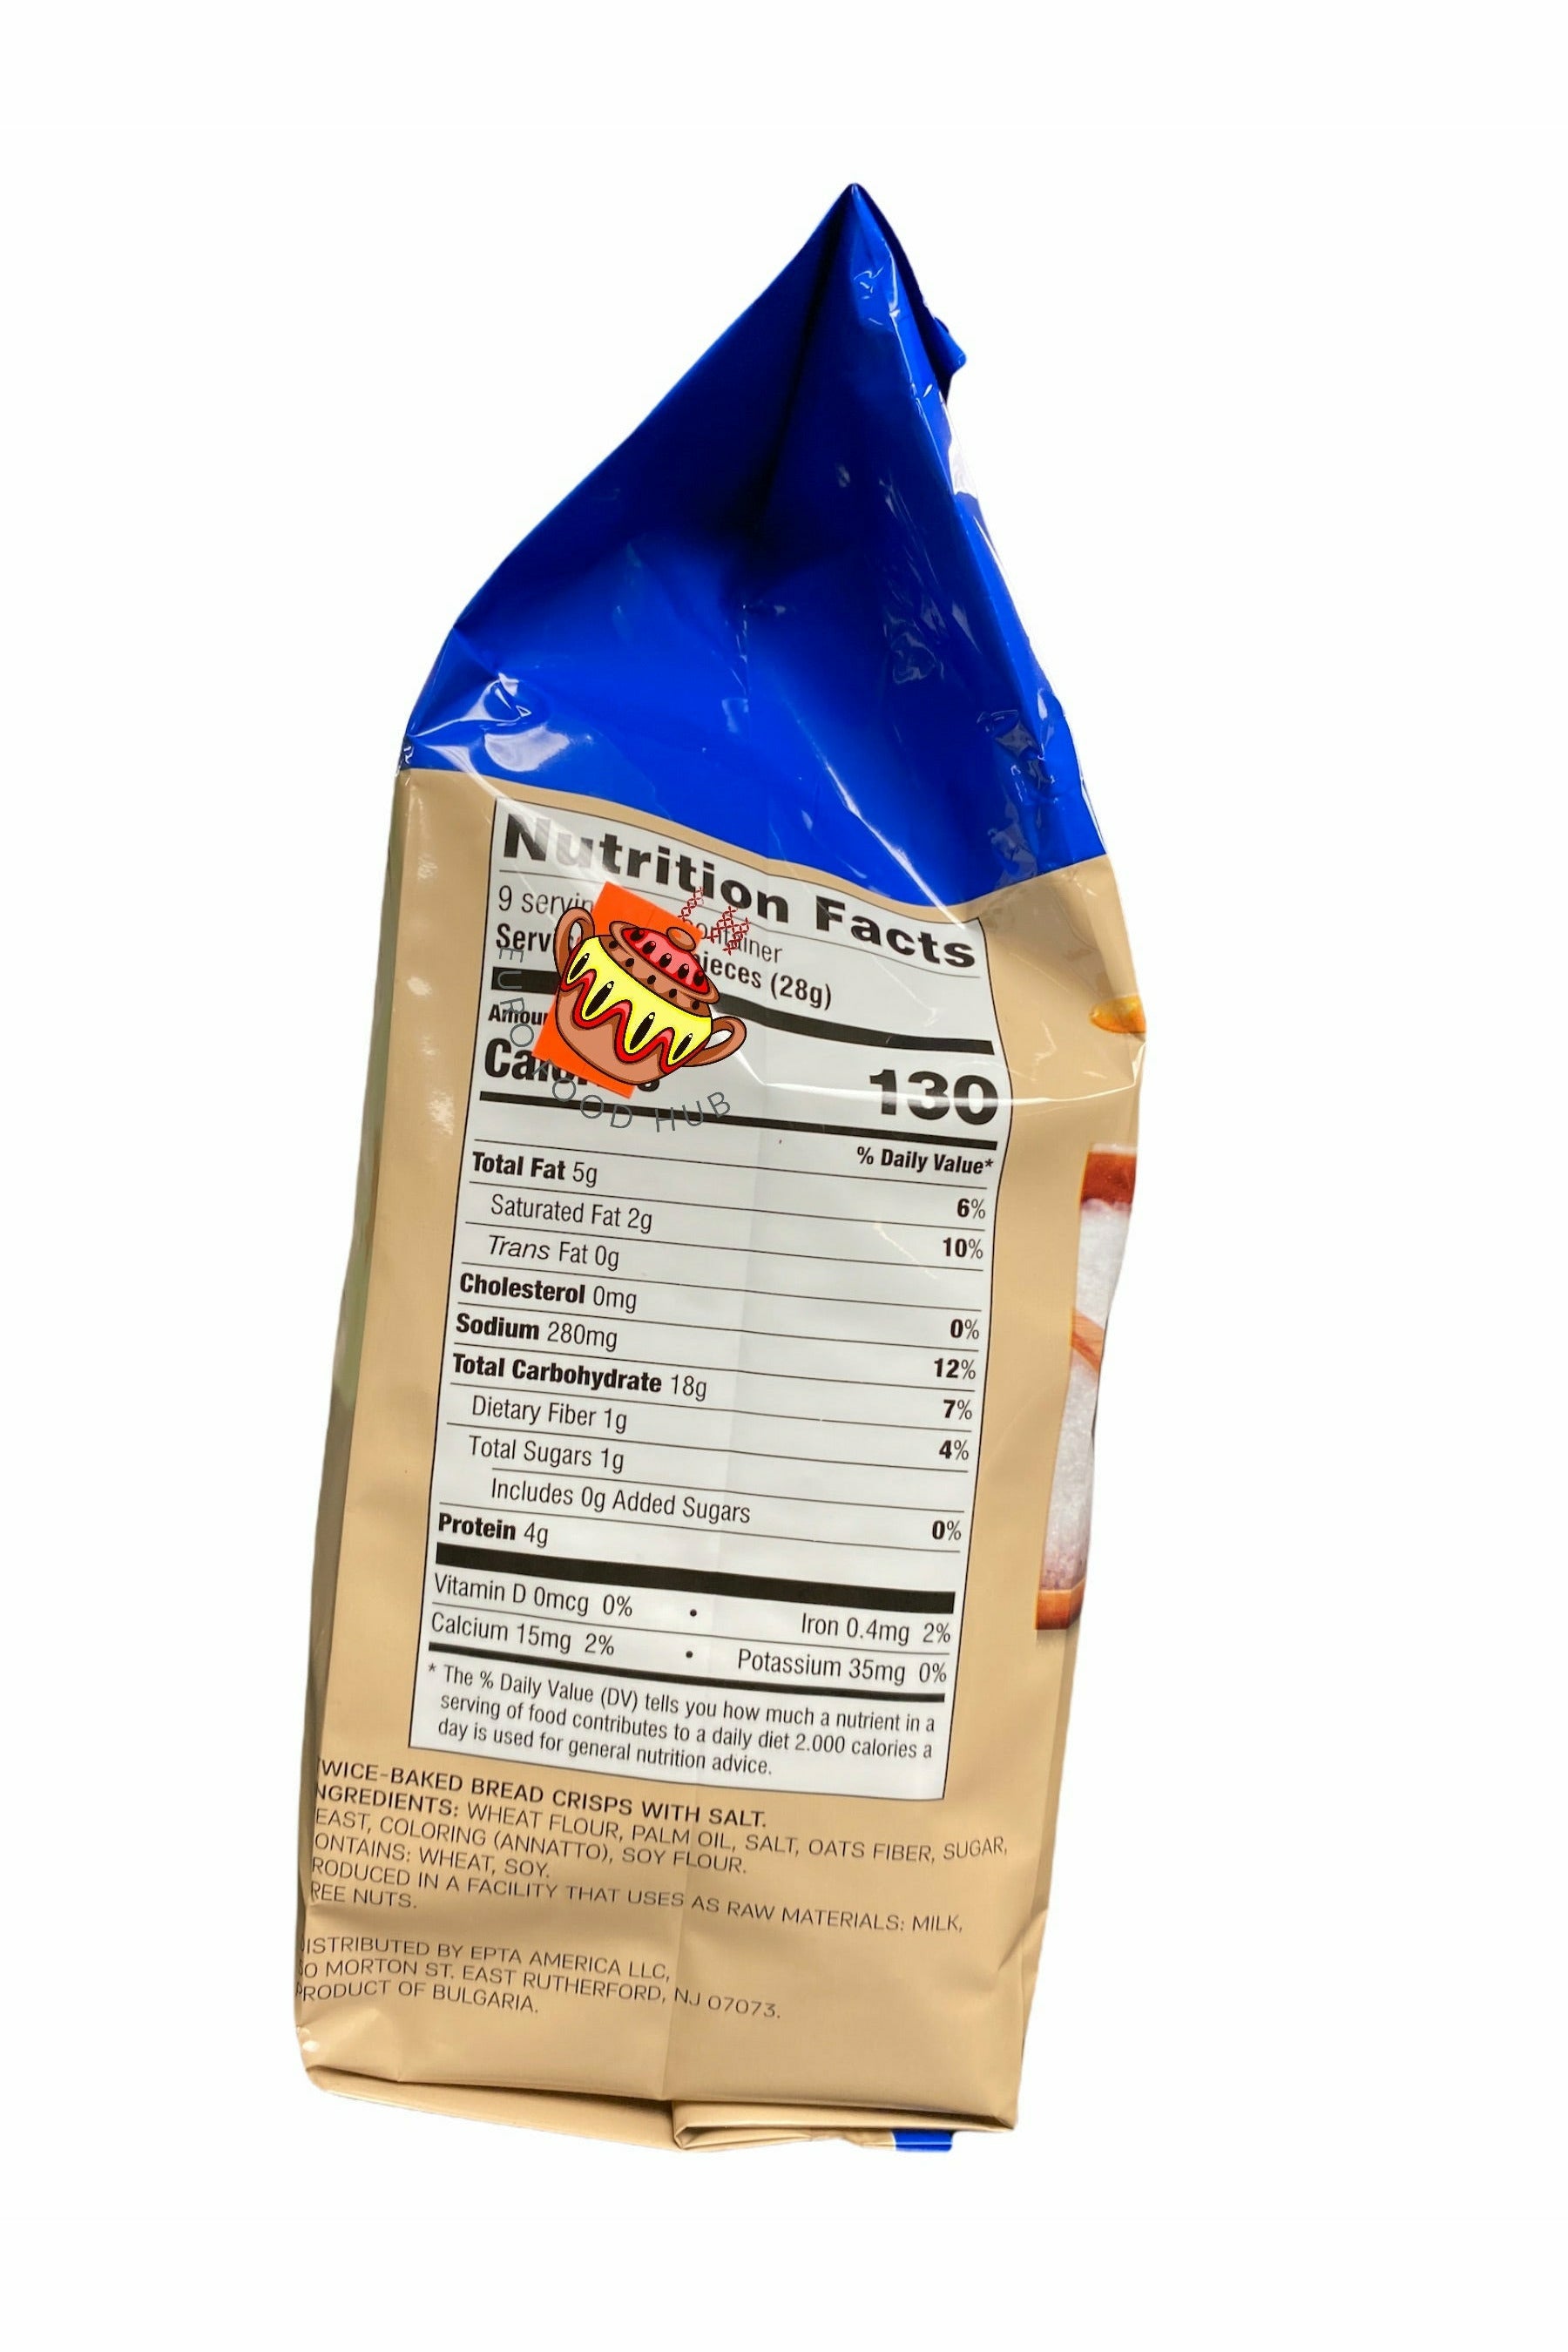 7 Days Bagel Chips/Bake Rolls - SEA SALT - Party Size